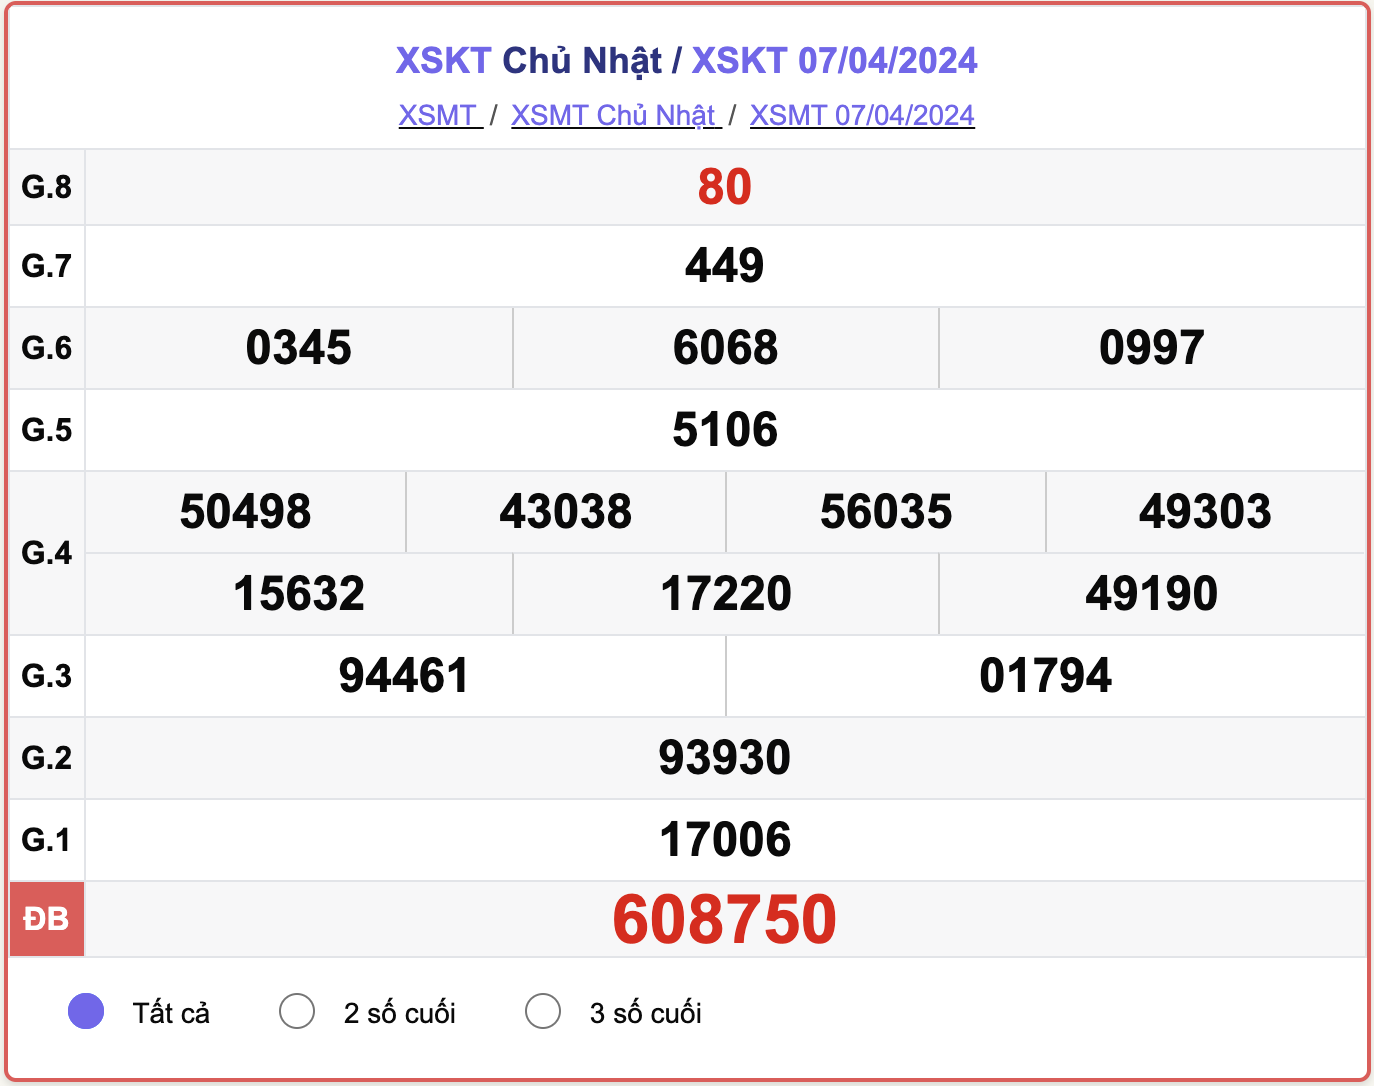 XSKT Chủ nhật, kết quả xổ số Kon Tum ngày 7/4/2024.